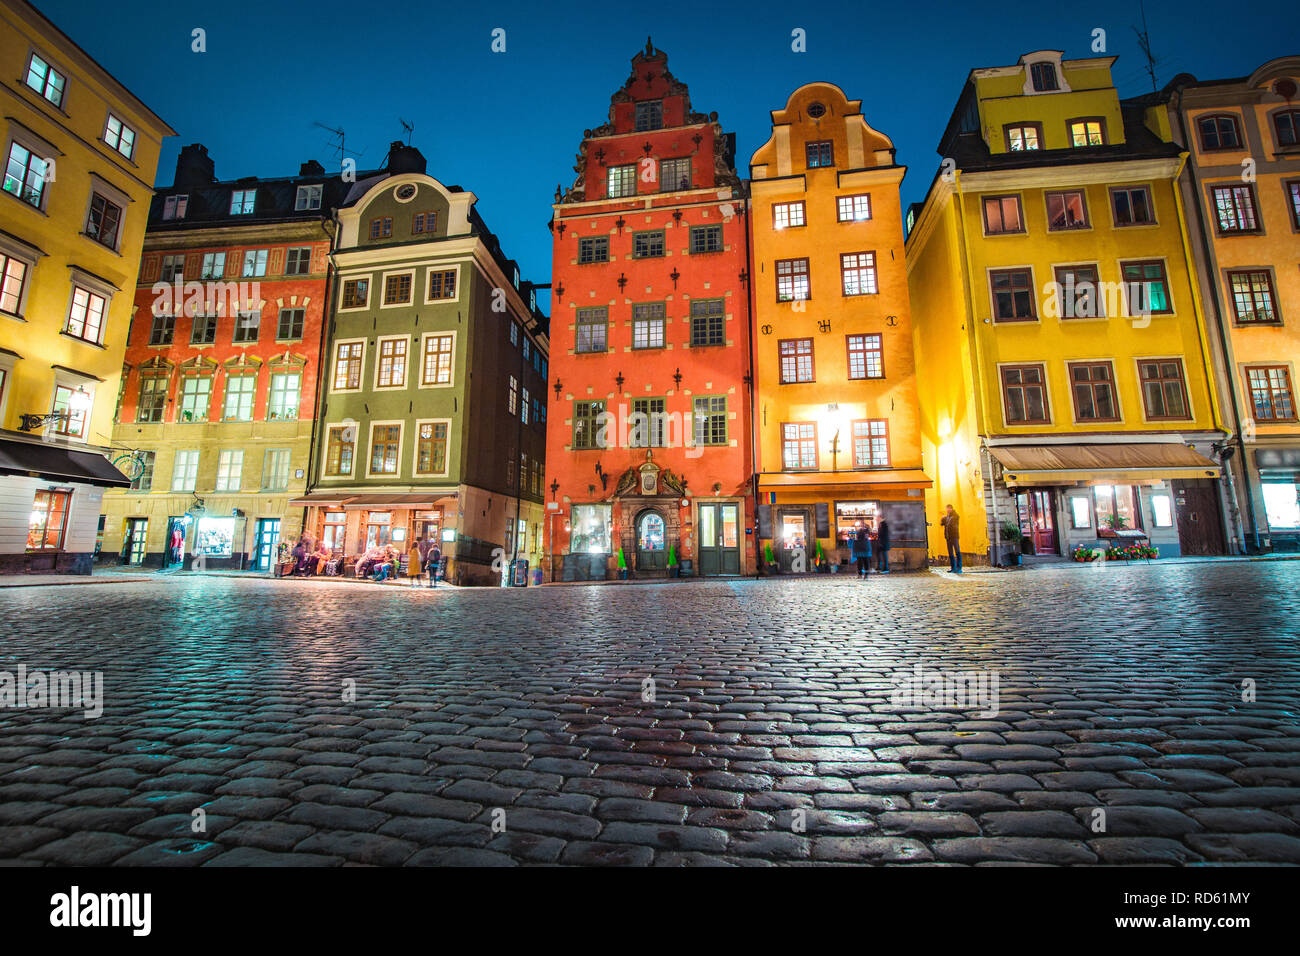 Klassische Ansicht der bunten Häusern an der berühmten stortorget Stadtplatz in der Stockholmer Altstadt Gamla Stan (Altstadt) in der Nacht, Stockholm, Schweden Stockfoto